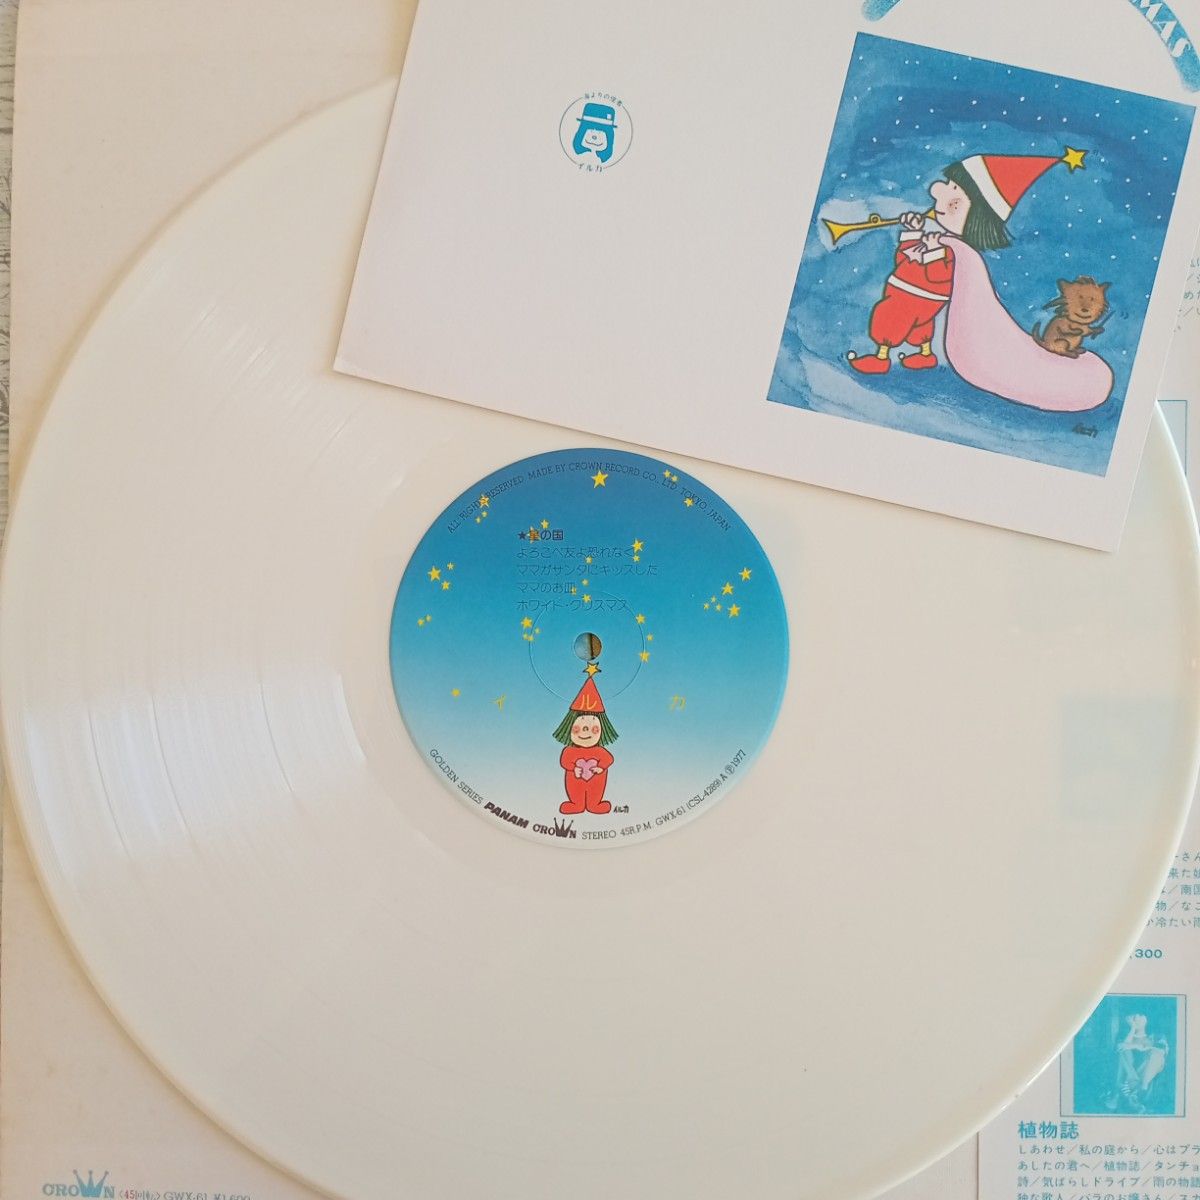 45回転クリスマスホワイトレコード MERRY CHRISTMAS&A HAPPY NEW YEAR『ボヘミアの森から』イルカ